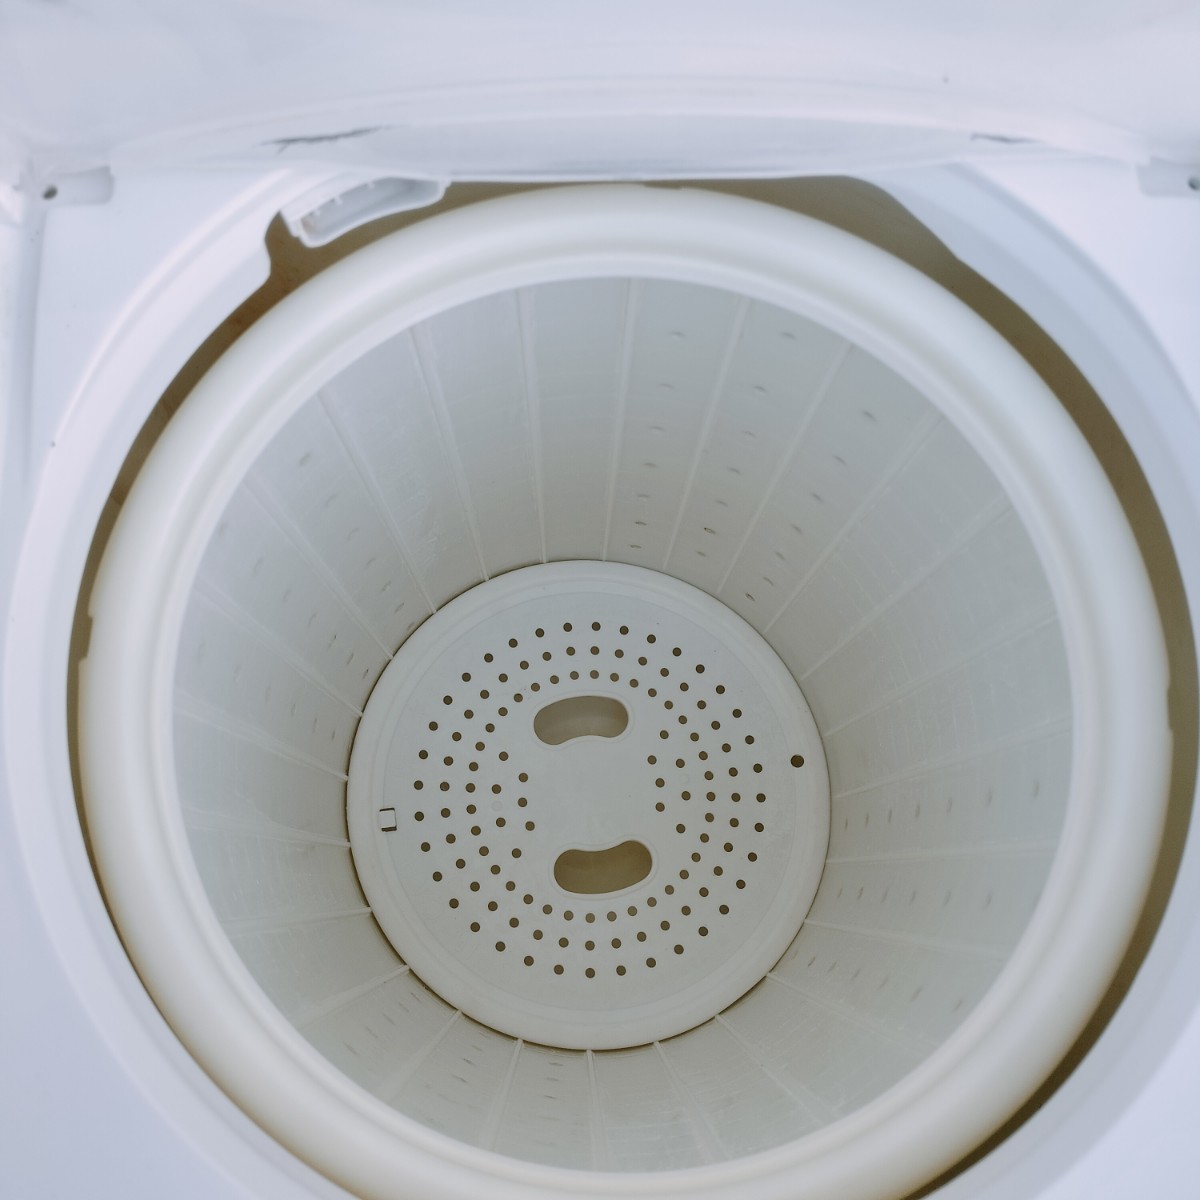 【中古品】Panasonic パナソニック 4.0kg二槽式洗濯機 NA-W40G2 2009年製 東京都町田市より家財便Cランク 直接歓迎 【管N183-2309】_画像8